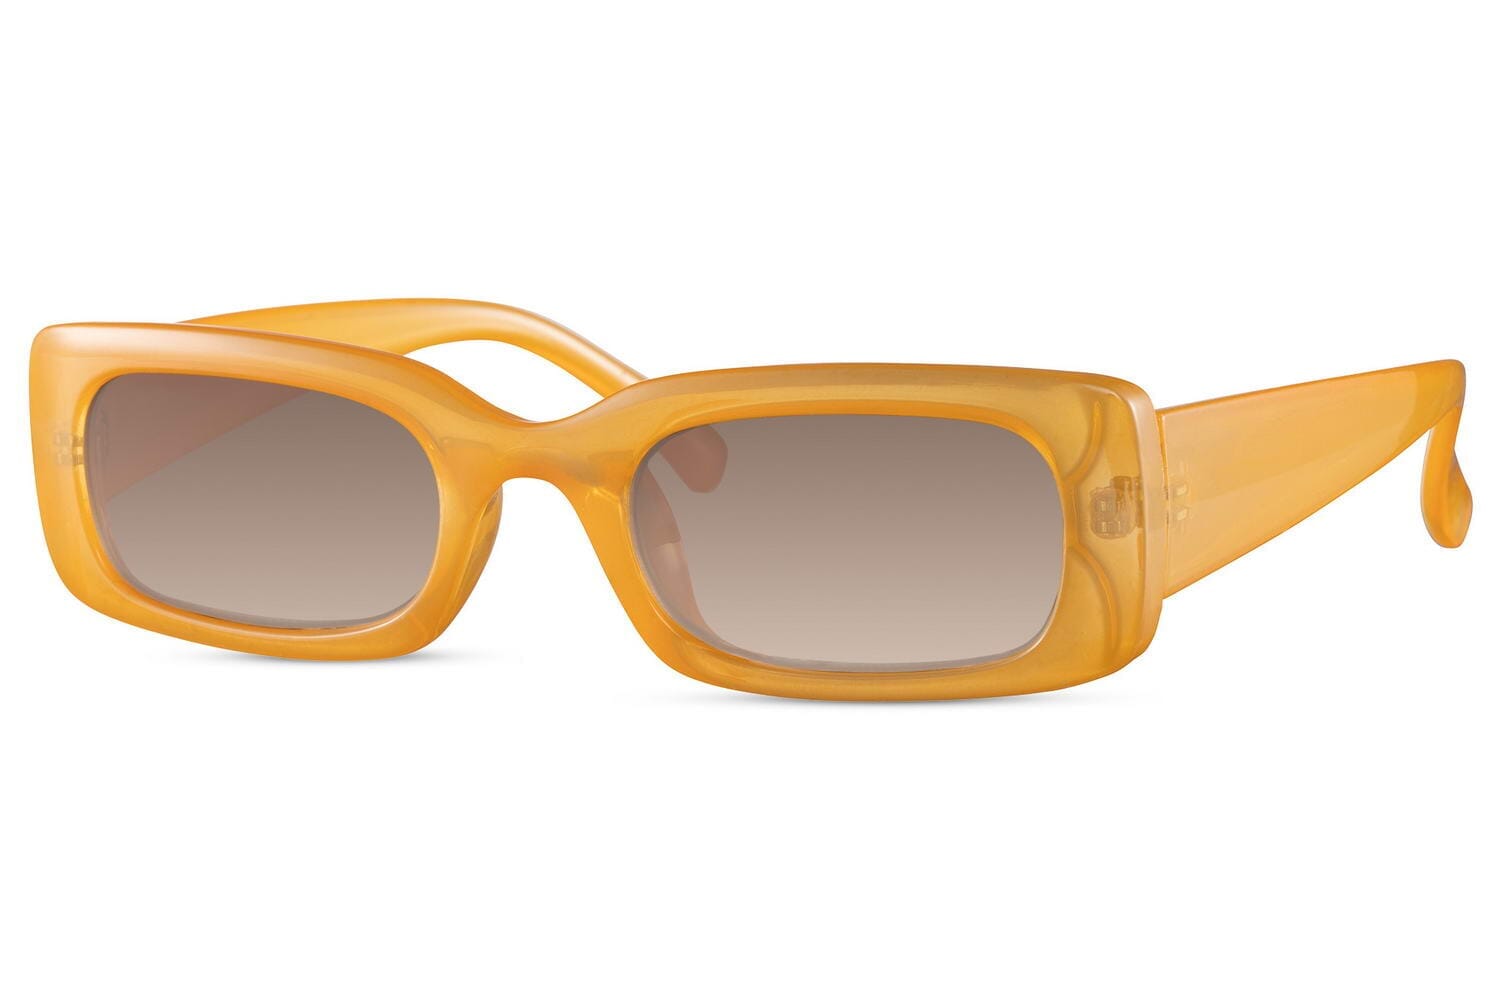 Orange frame sunglasses. Dark lenses. UV400 protected.